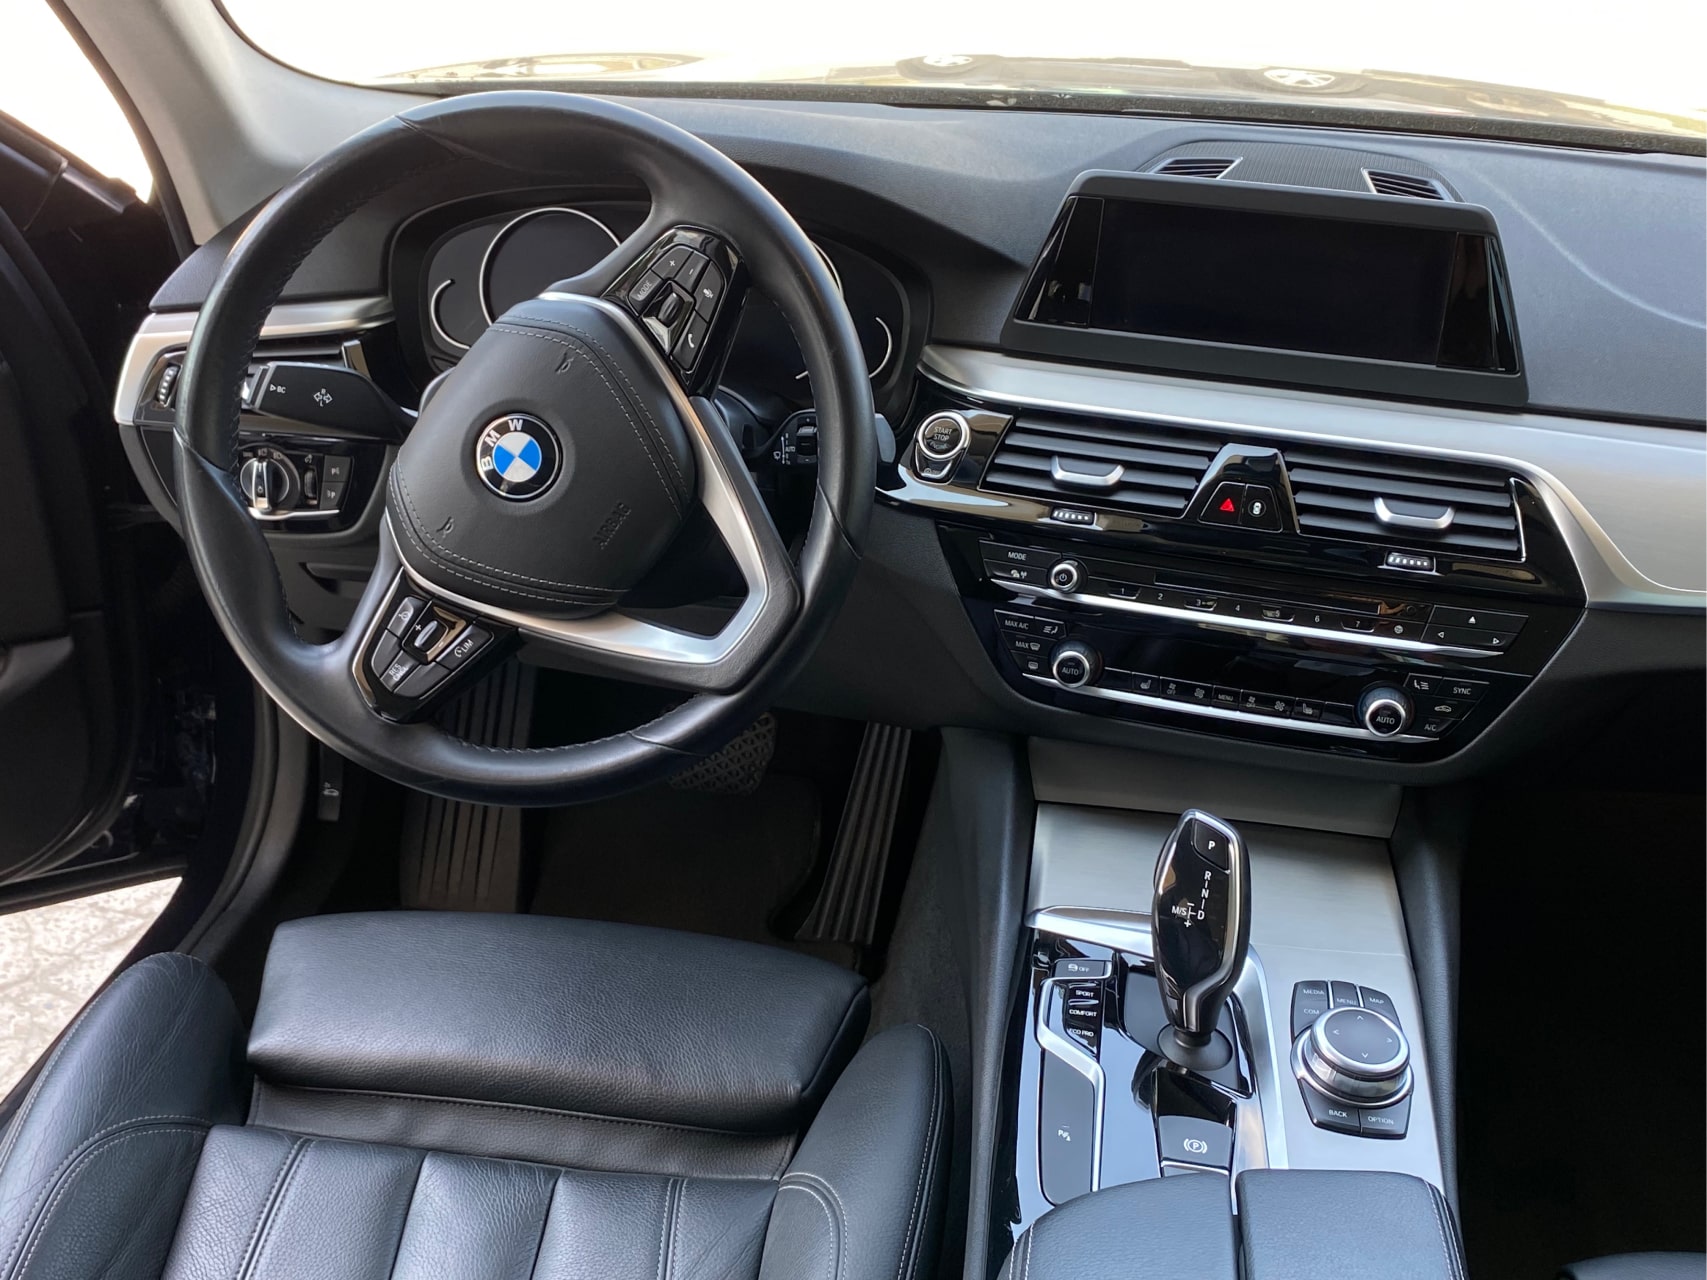 Аренда  BMW 520d G30 Luxury Line  3 класса 2019 года в городе Минск от 99 $/сутки,  двигатель: ДТ , объем 2.0 литров, КАСКО (Мультидрайв), без водителя, вид 3 - West Group